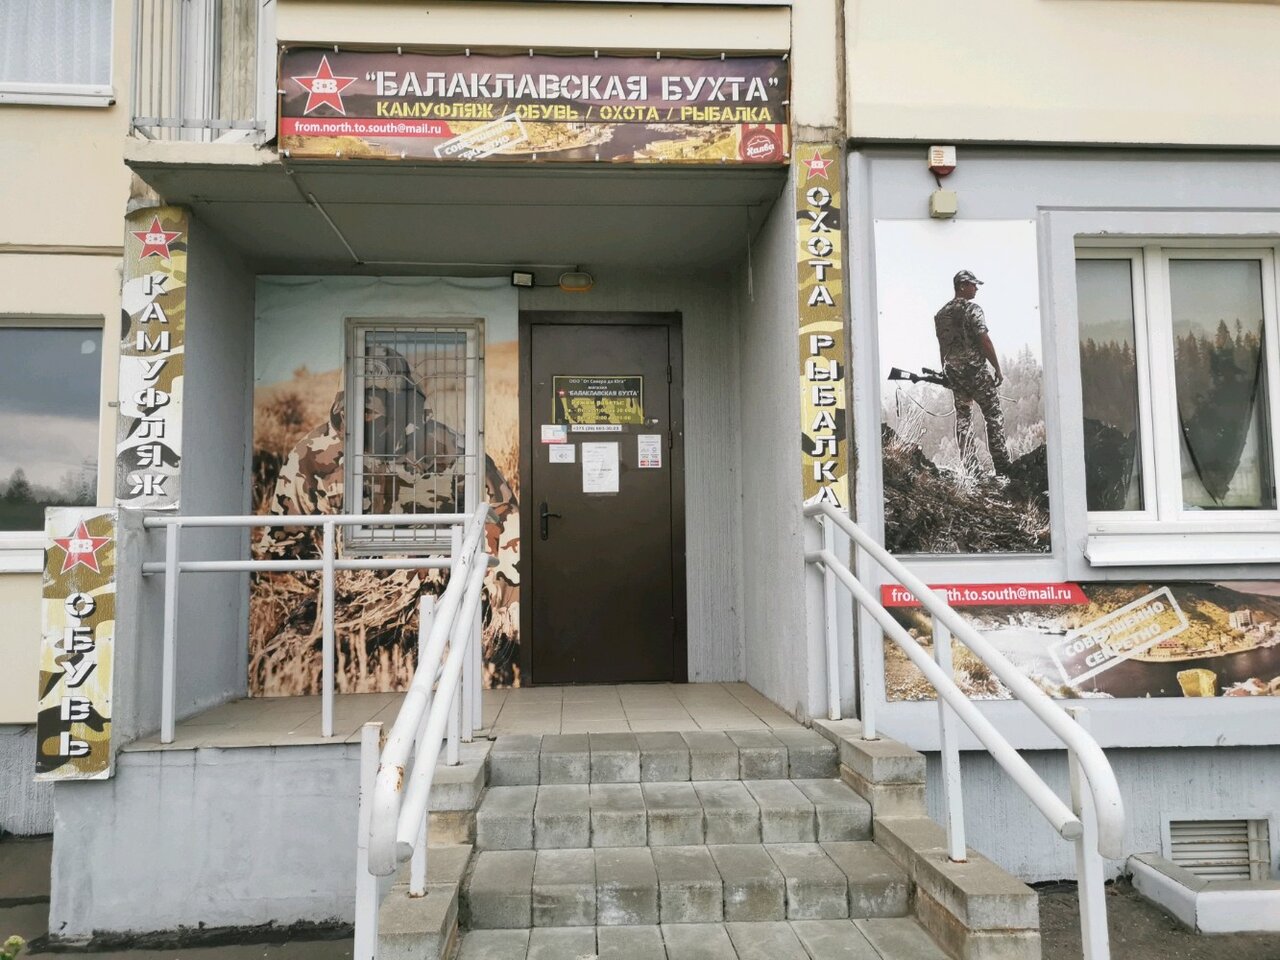 Вход в армейский магазин "Балаклавская бухта" на Лидской в Минске